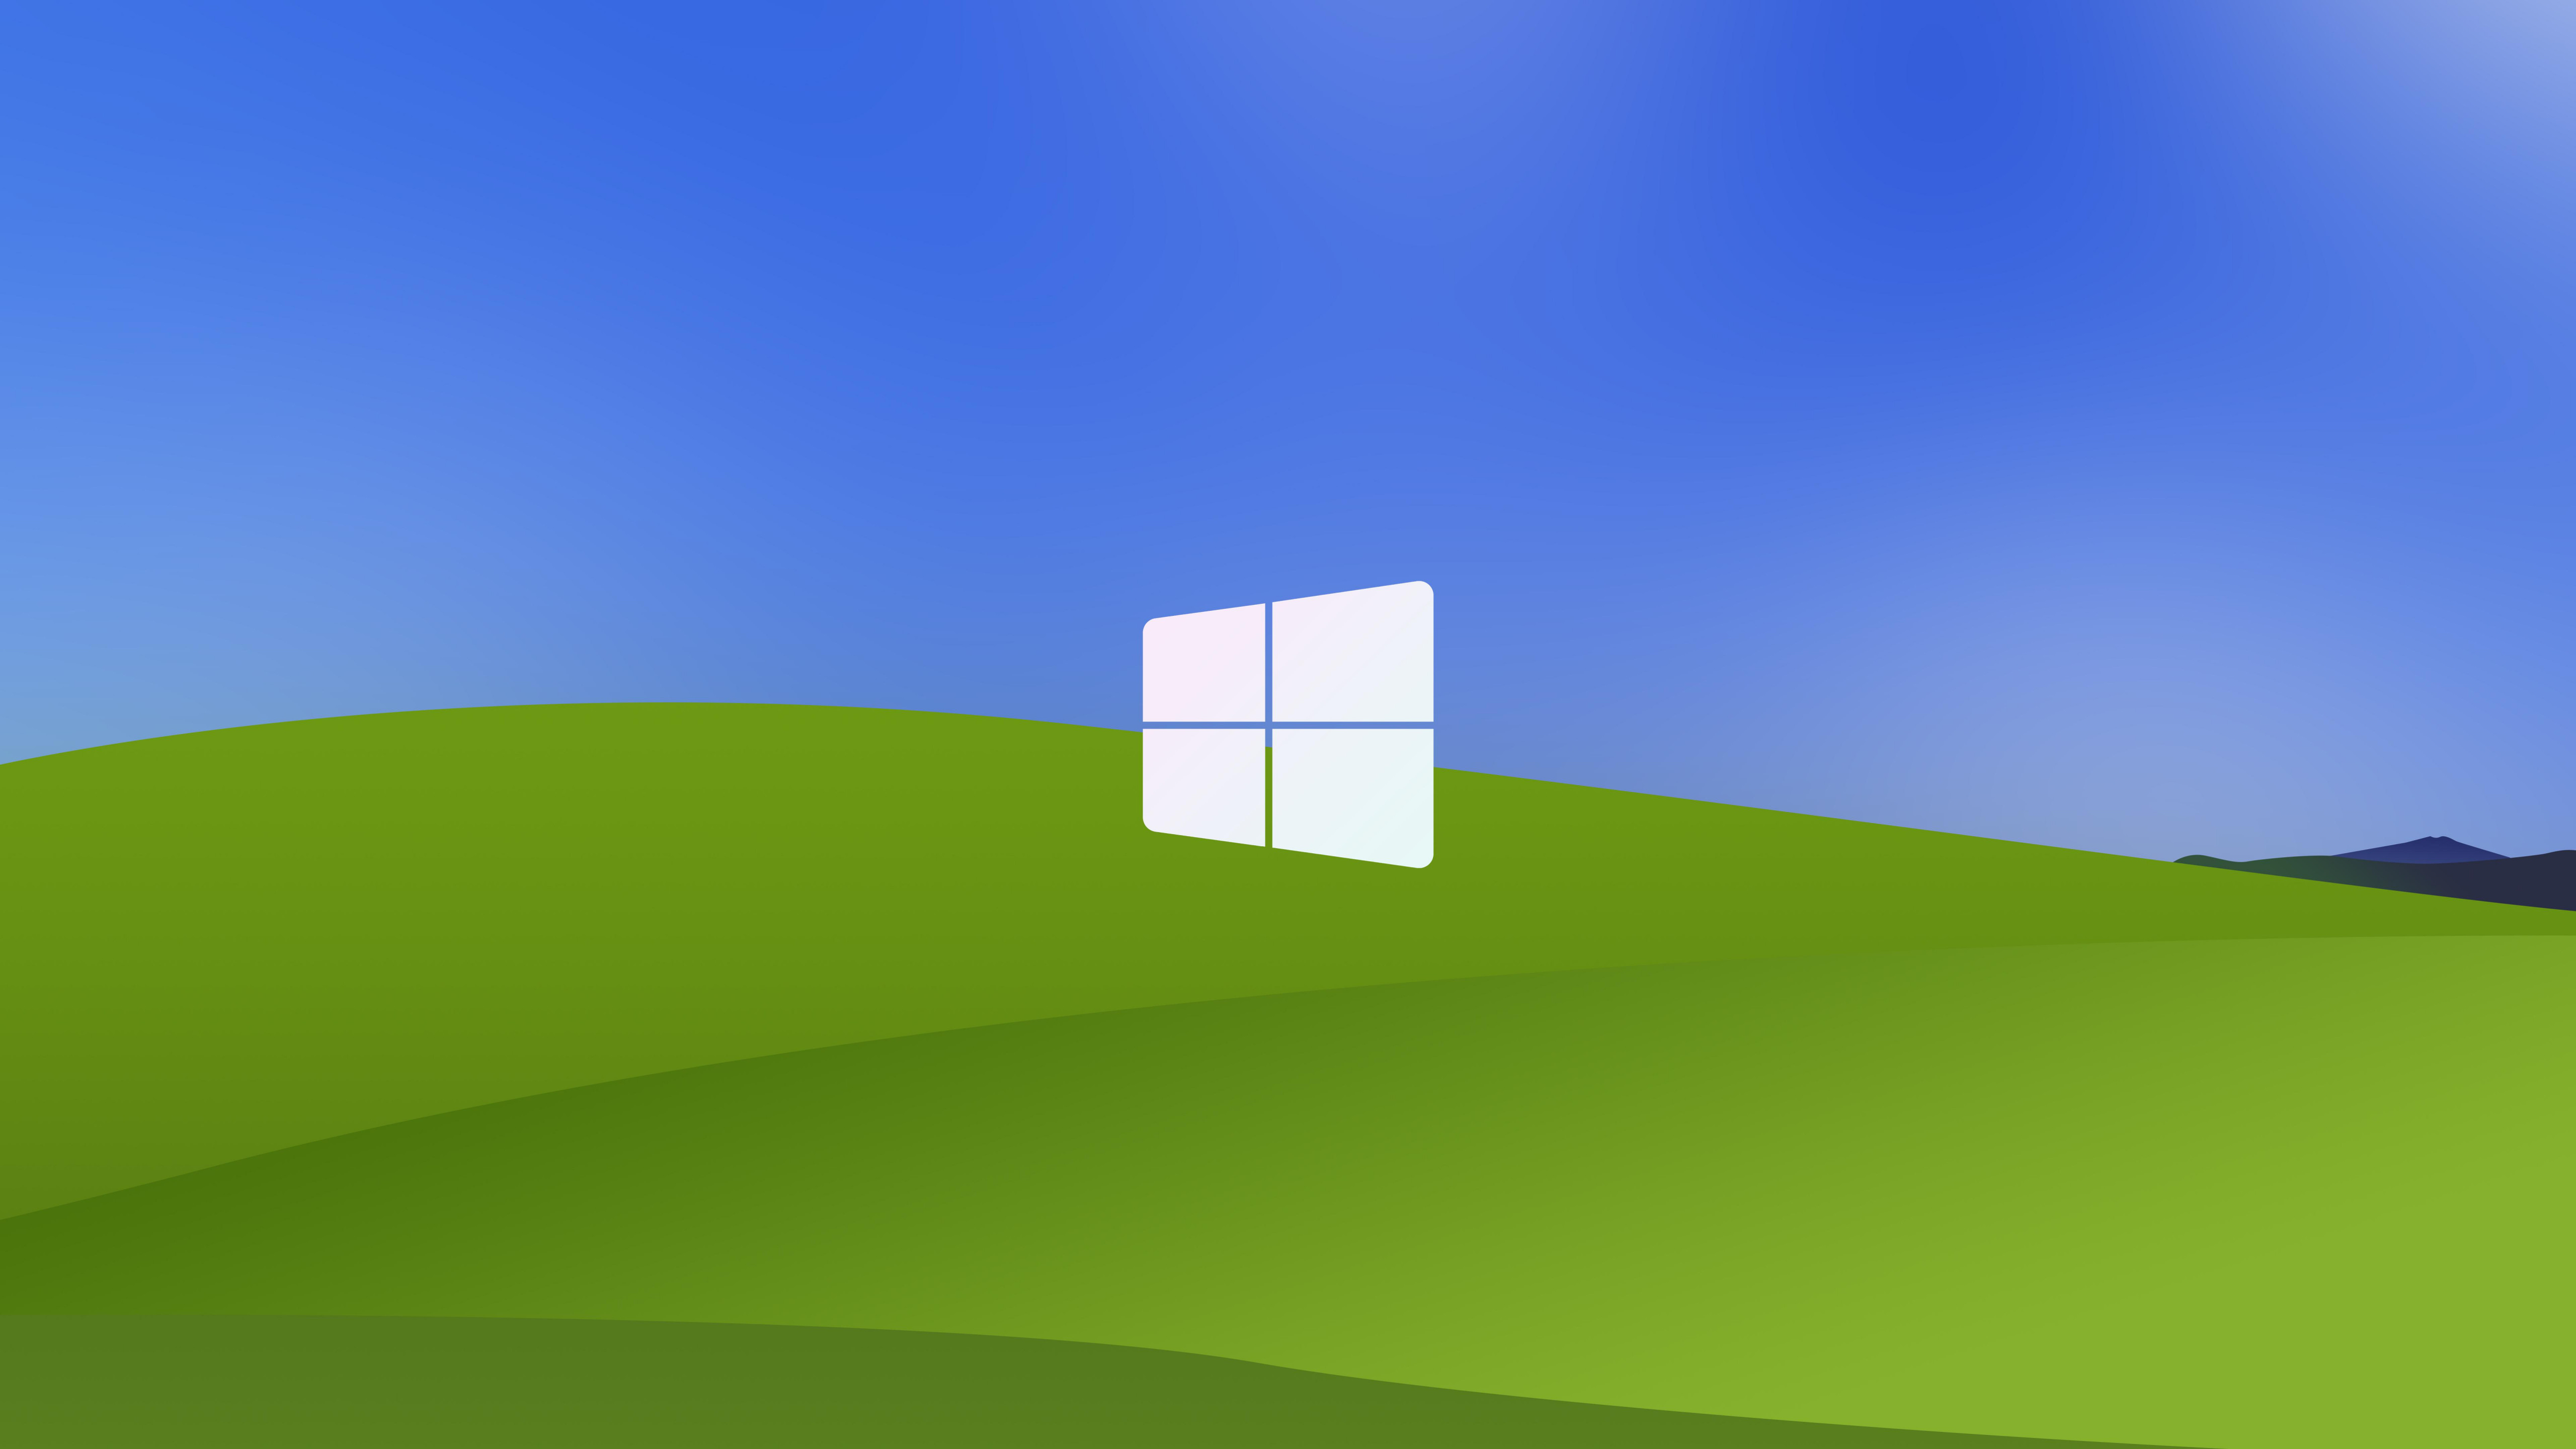 Windows XP luôn là một lựa chọn hoàn hảo cho những người yêu thích sự đơn giản và thanh lịch vấn đề của nó. Một hình nền Windows XP đem lại cho người dùng cảm giác nhẹ nhàng, độc đáo, và đúng chất của nó. Bạn sẽ nhận ra tầm quan trọng của sự cứng cáp của Windows XP, hãy cùng khám phá những hình nền thú vị với Windows XP.